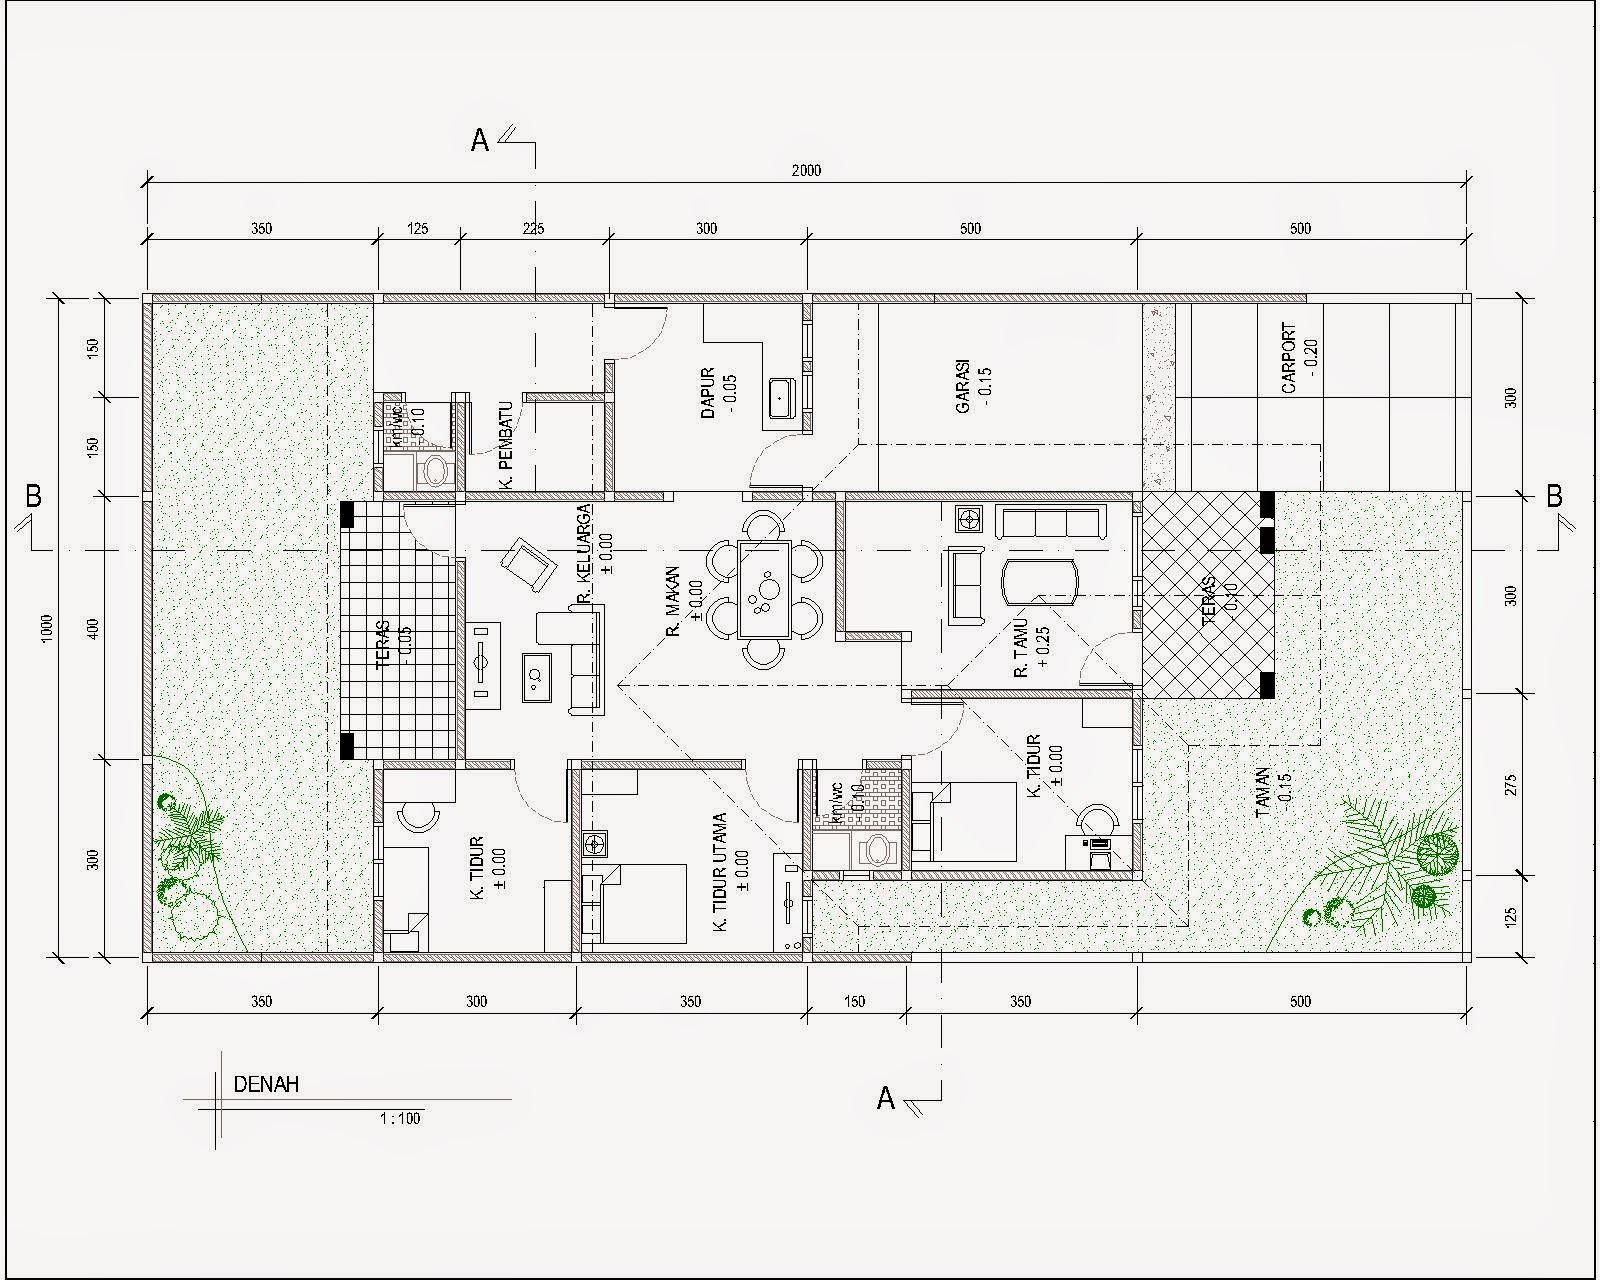 Denah Rumah Minimalis Autocad Expo Desain Rumah